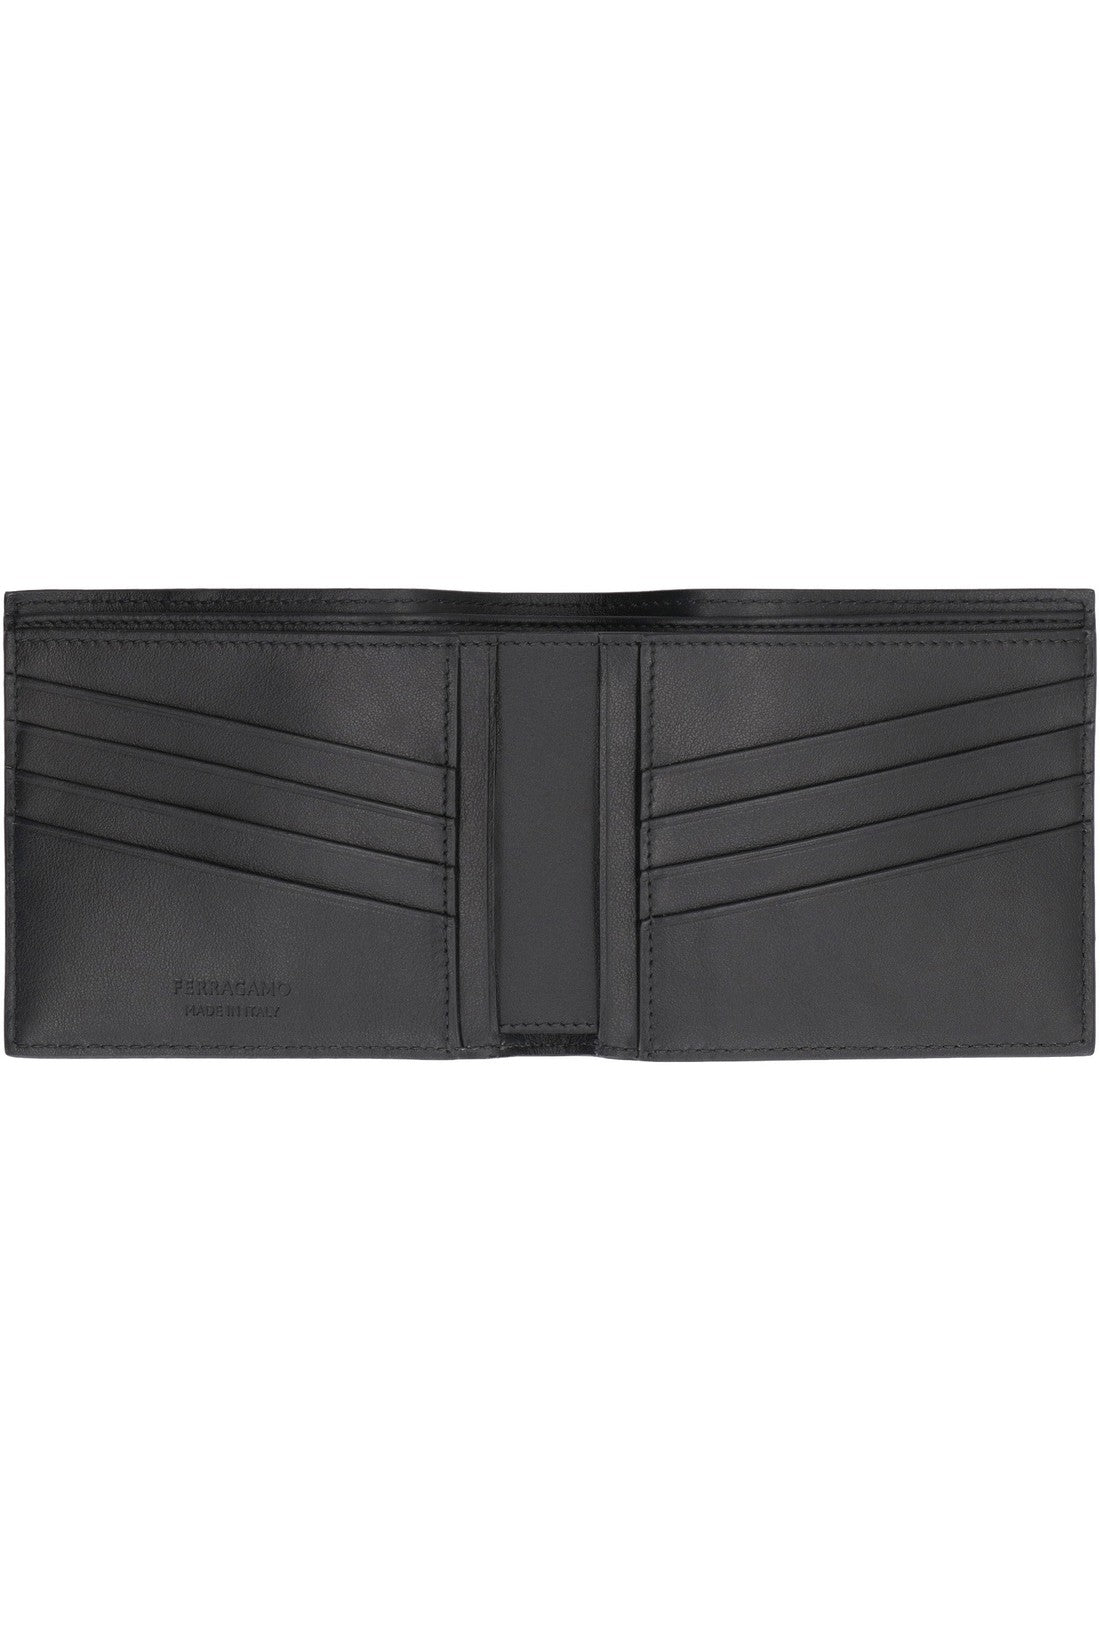 FERRAGAMO-OUTLET-SALE-Leather flap-over wallet-ARCHIVIST